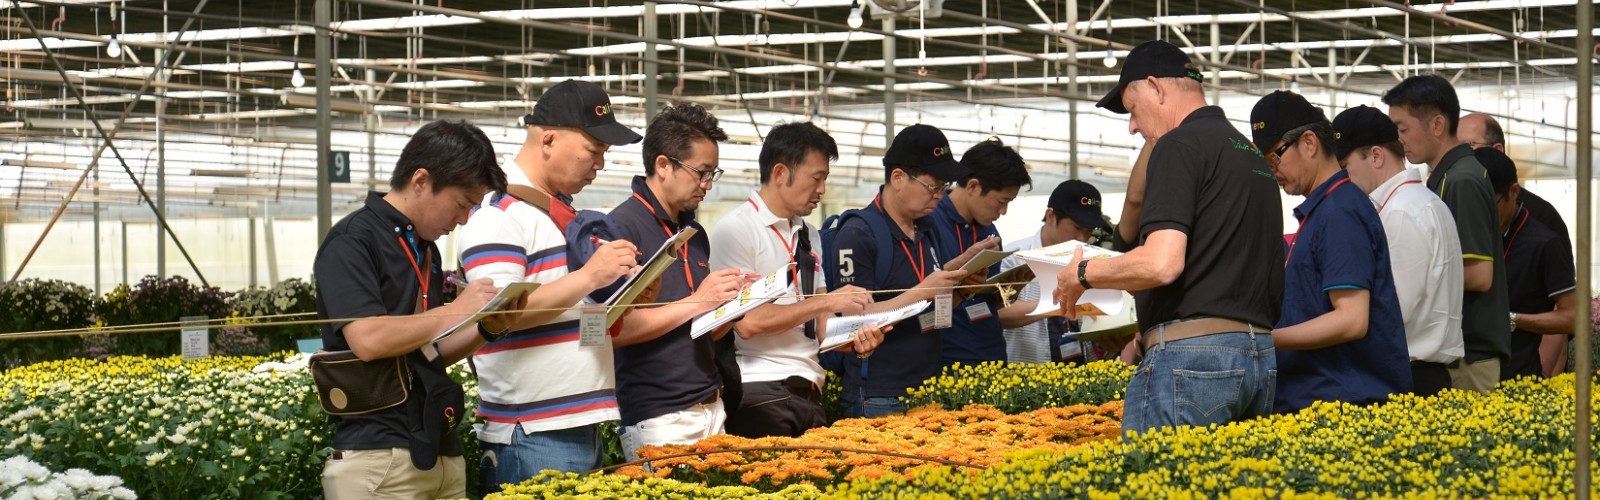 TCBC - Dalat Hasfarm tổ chức giới thiệu hoa thử nghiệm (flowers trial 2017) – NGÀY HỘI CỦA SỰ ĐỔI MỚI